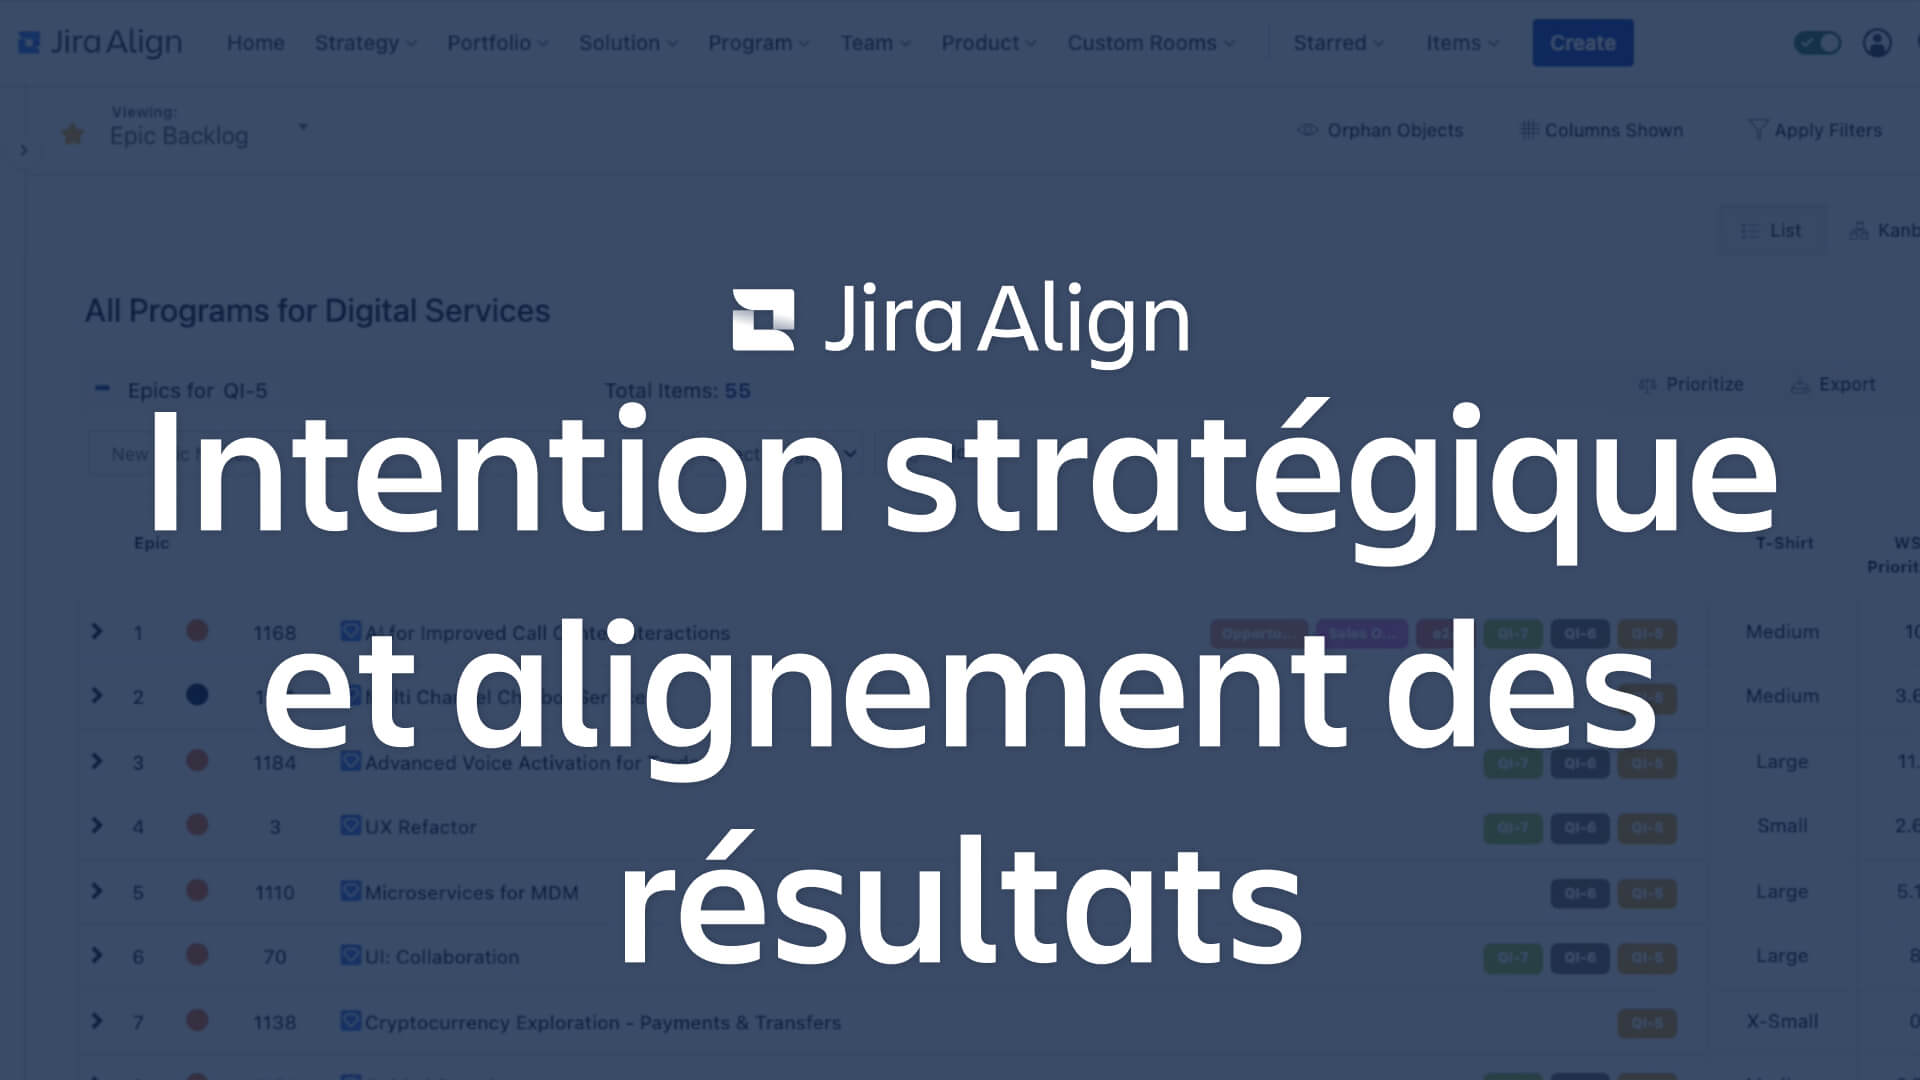 Image de l'intention stratégique et de l'alignement des résultats avec Jira Align